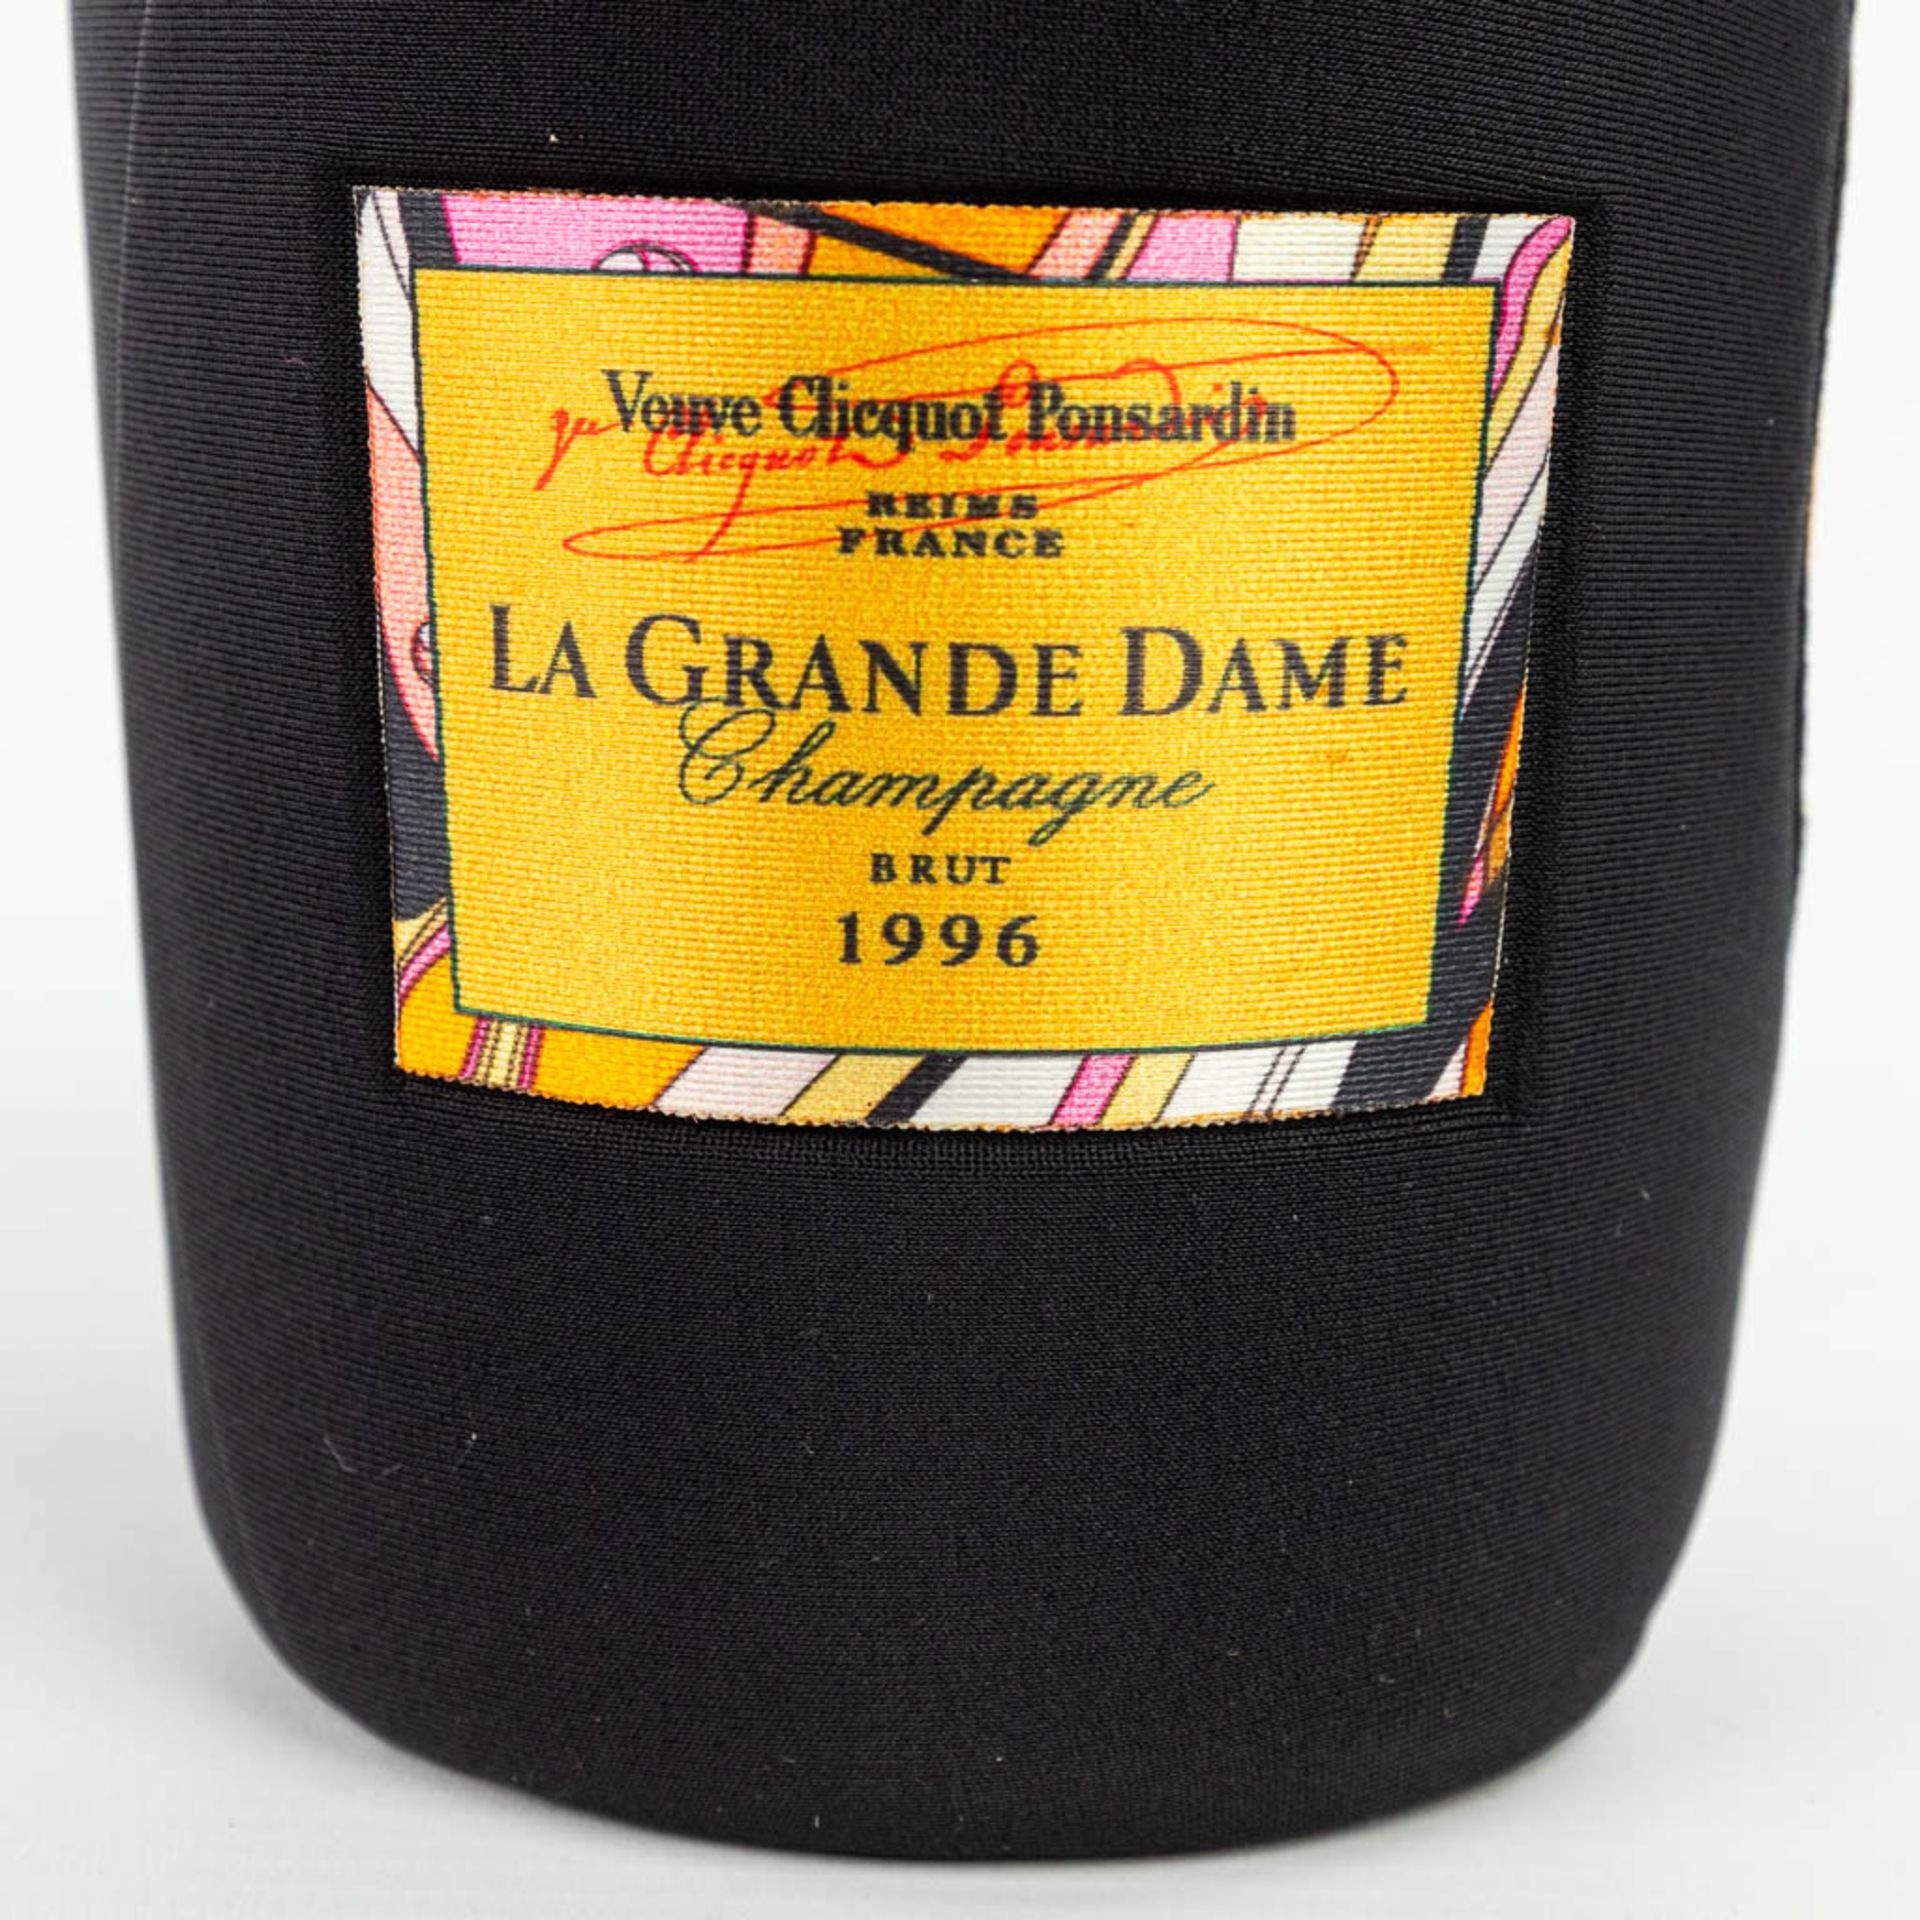 A bottle of Veuve Clicquot Ponsardin 1996 'La Grande Dame' limited edition by Emilio Pucci. - Bild 11 aus 14